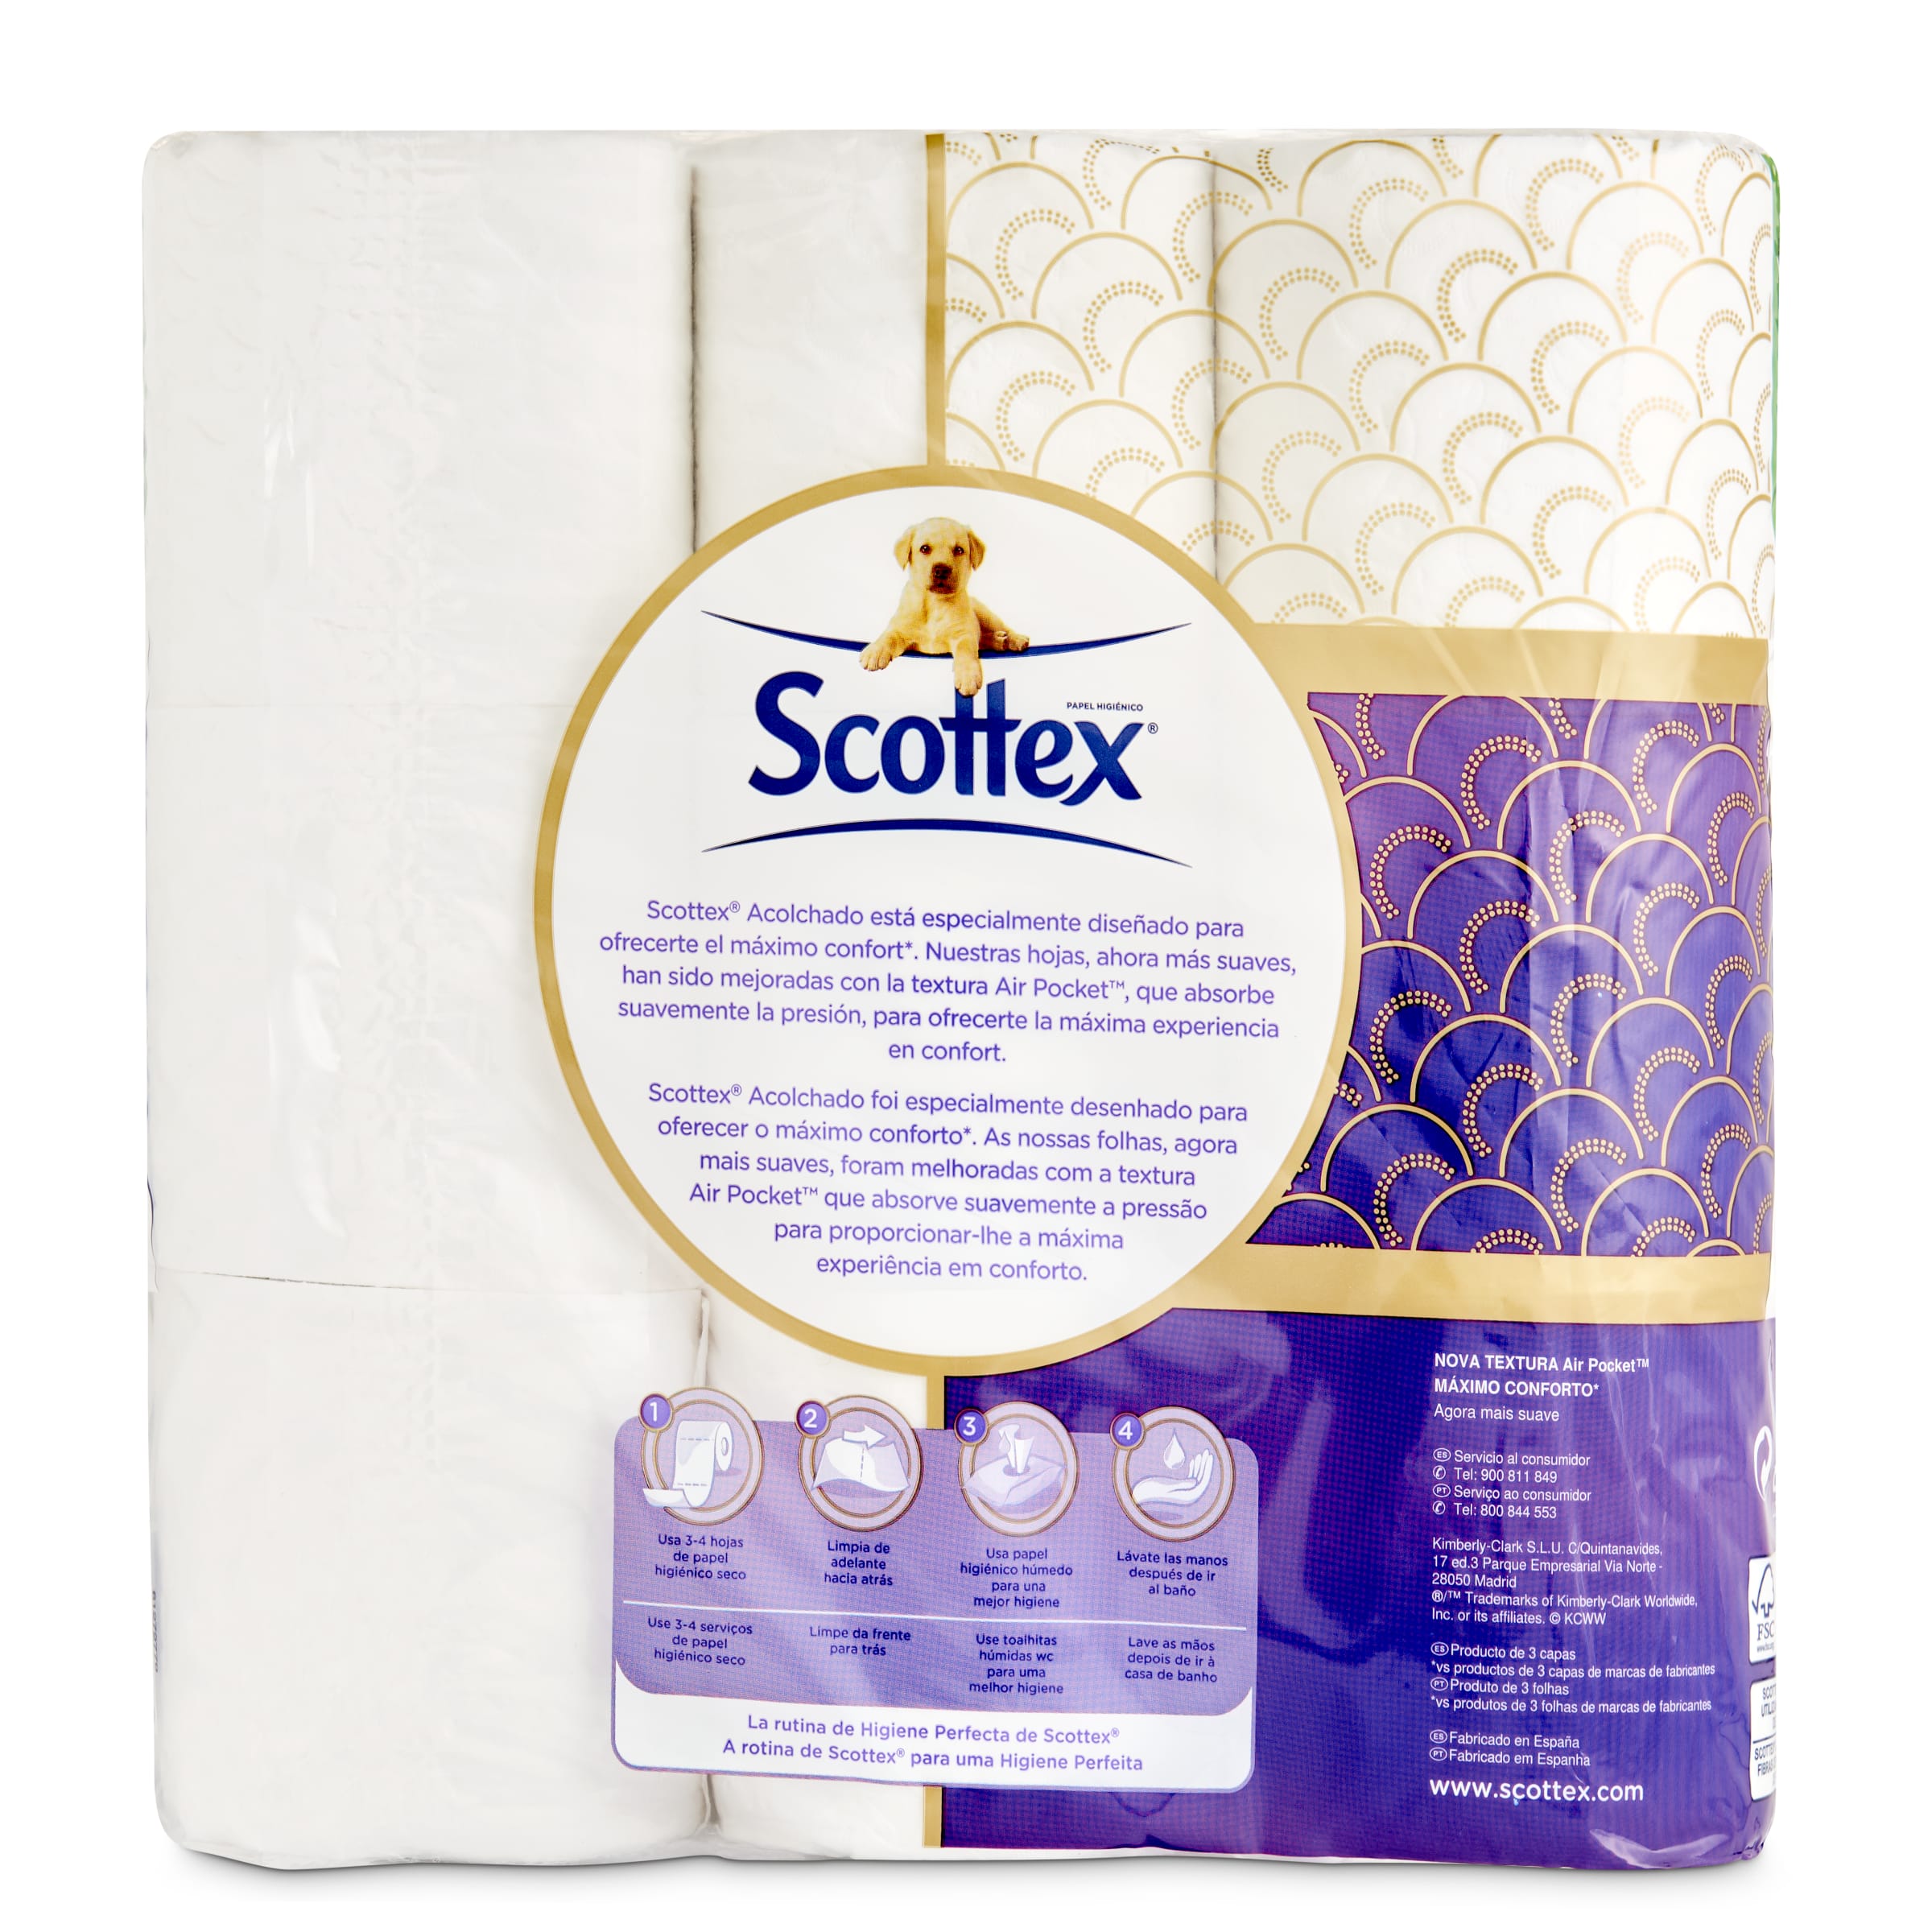 Papel higiénico original Scottex bolsa 12 unidades - Supermercados DIA